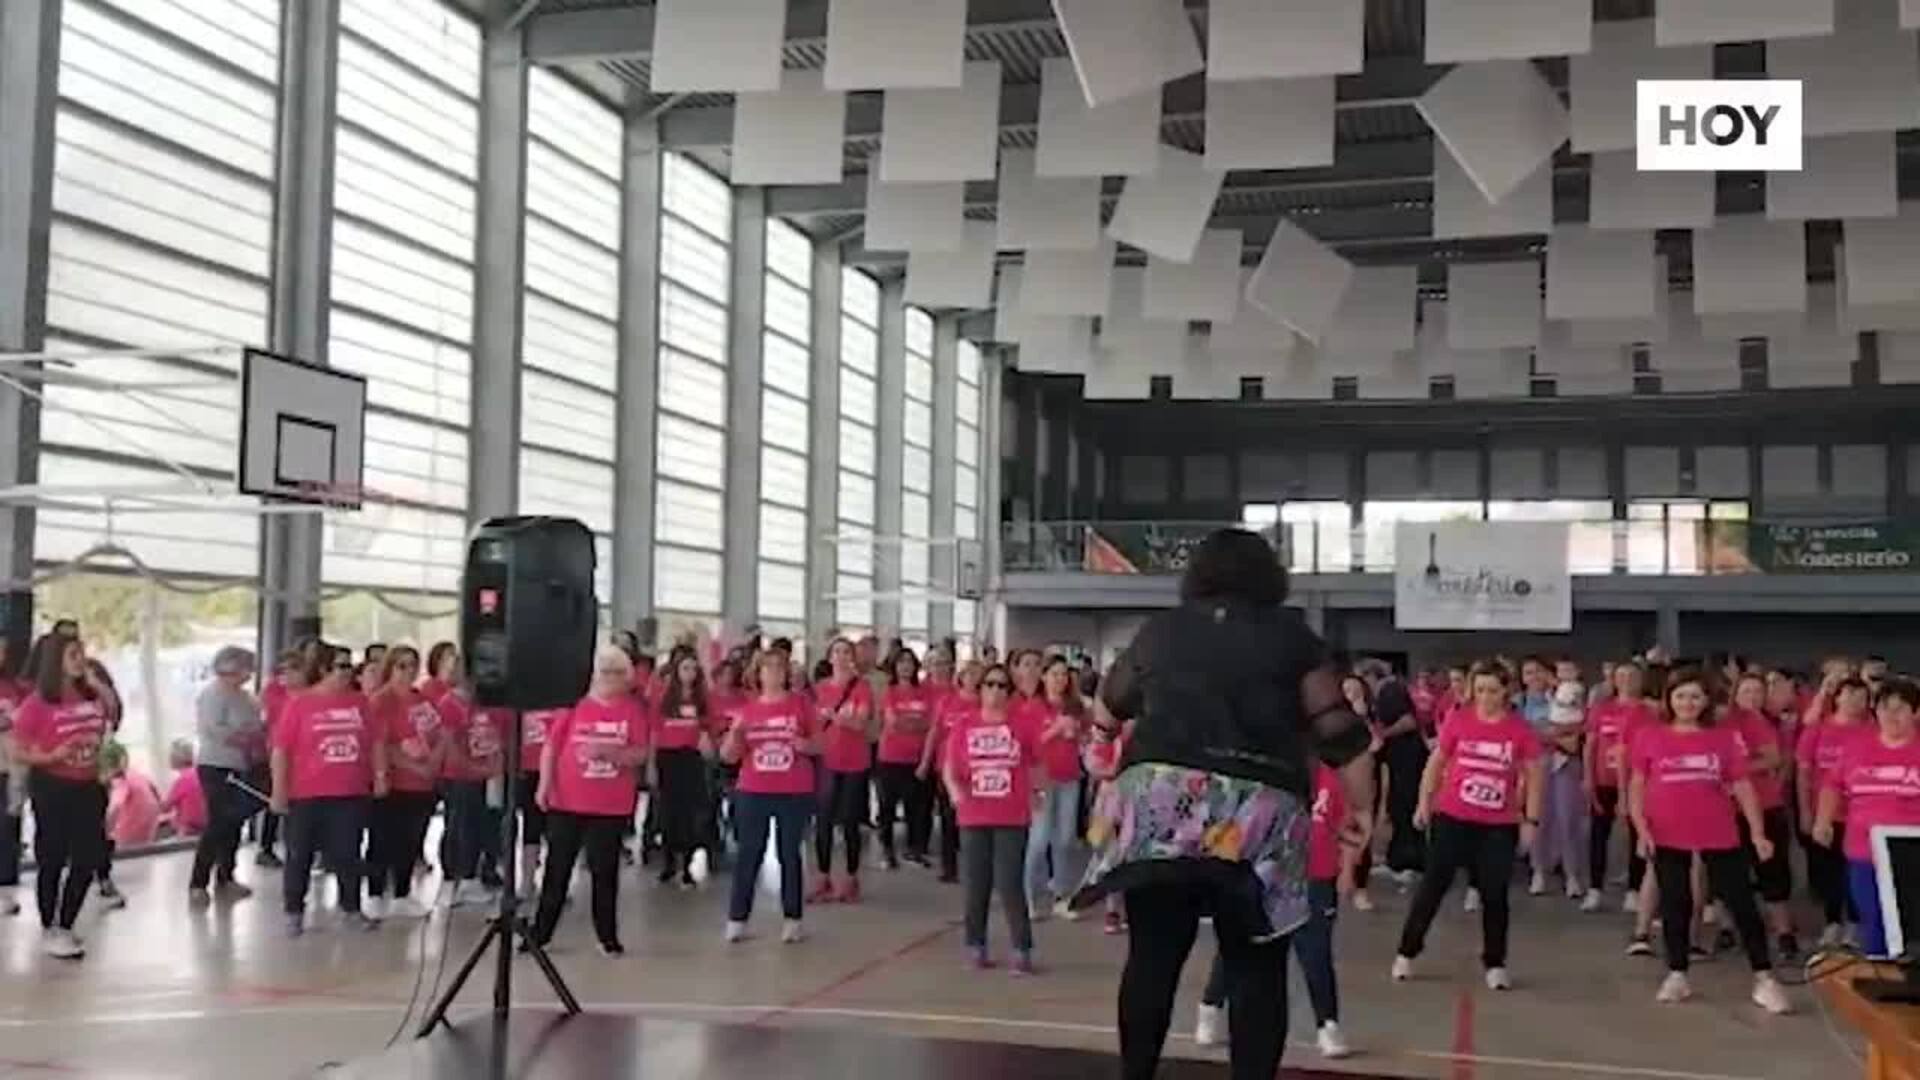 La IV Marcha contra el cáncer de mama vuelve a despertar una ola de solidaridad en Monesterio